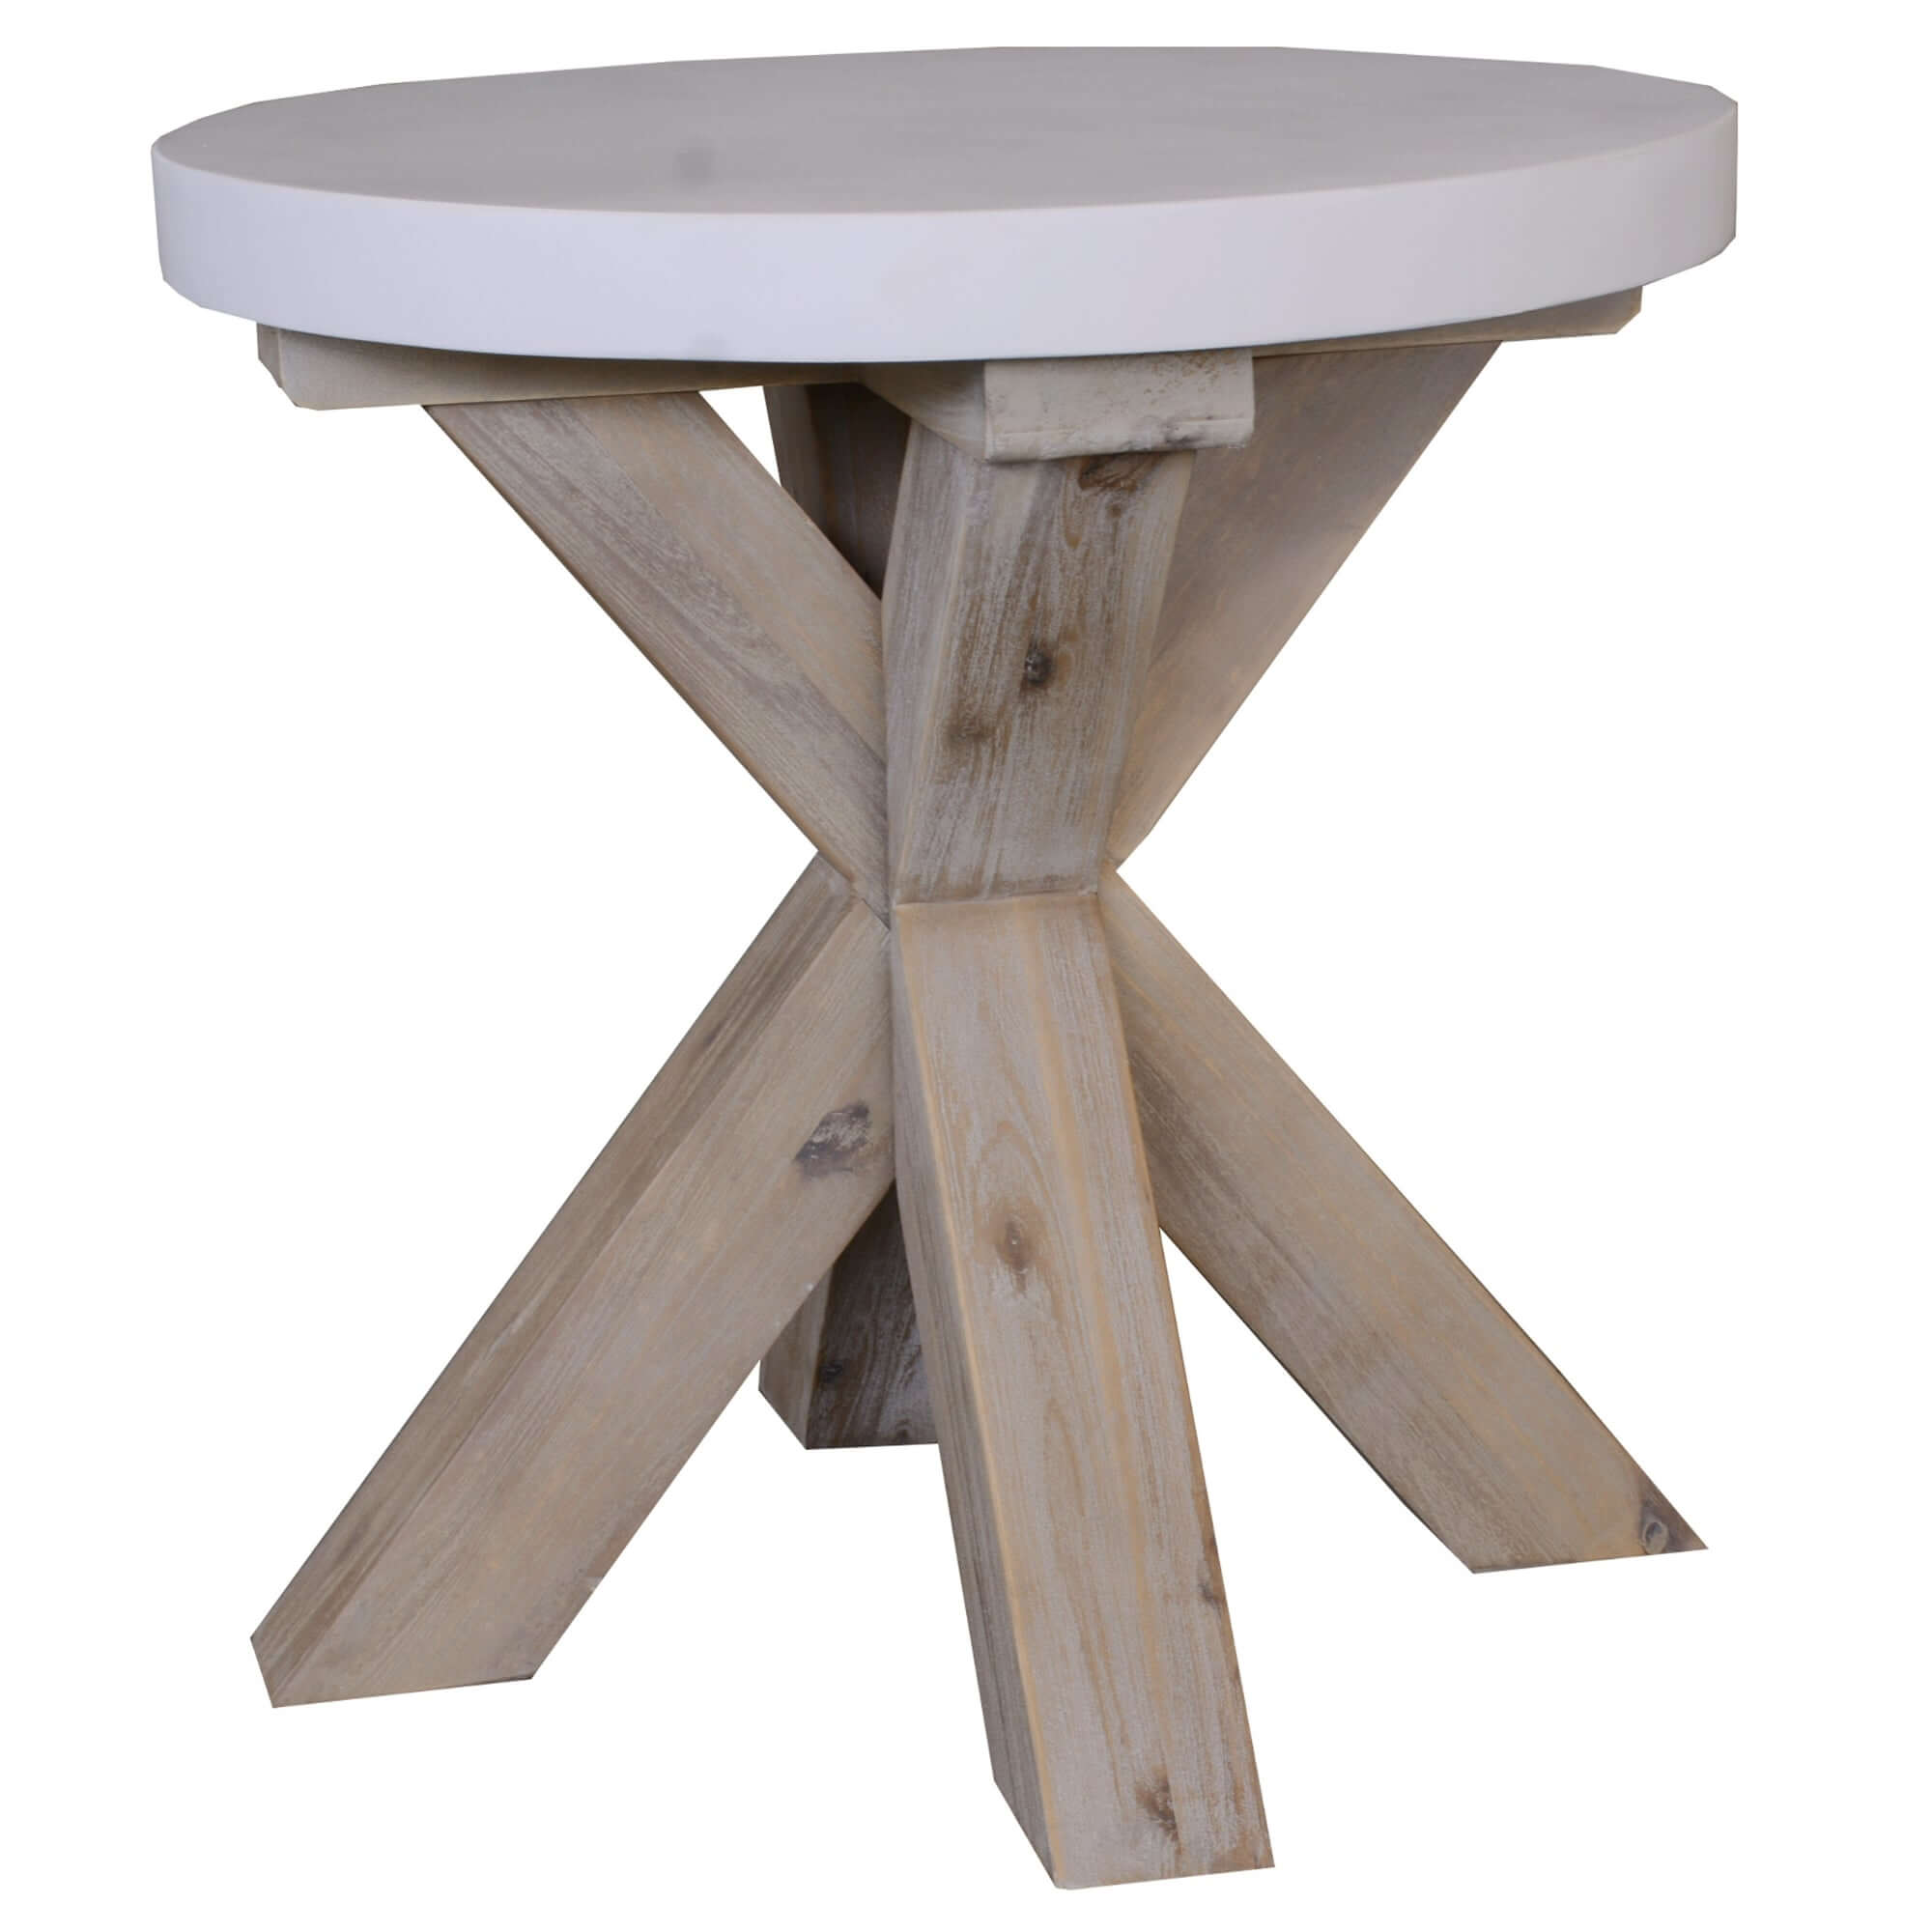 Stony Round Lamp Table - 50cm, Concrete Top-Upinteriors